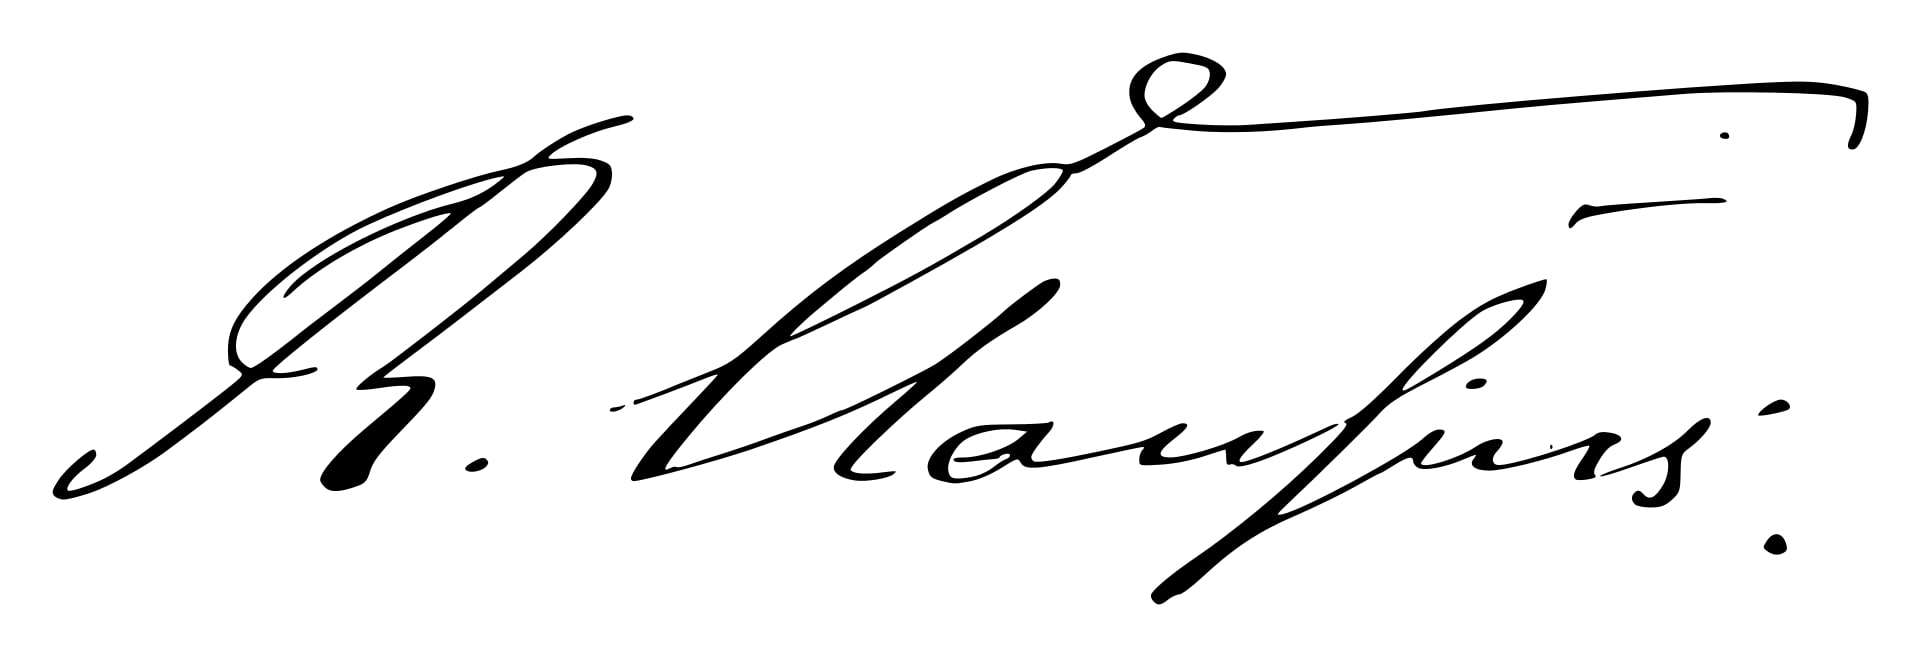 Rudolf Clausius Signature